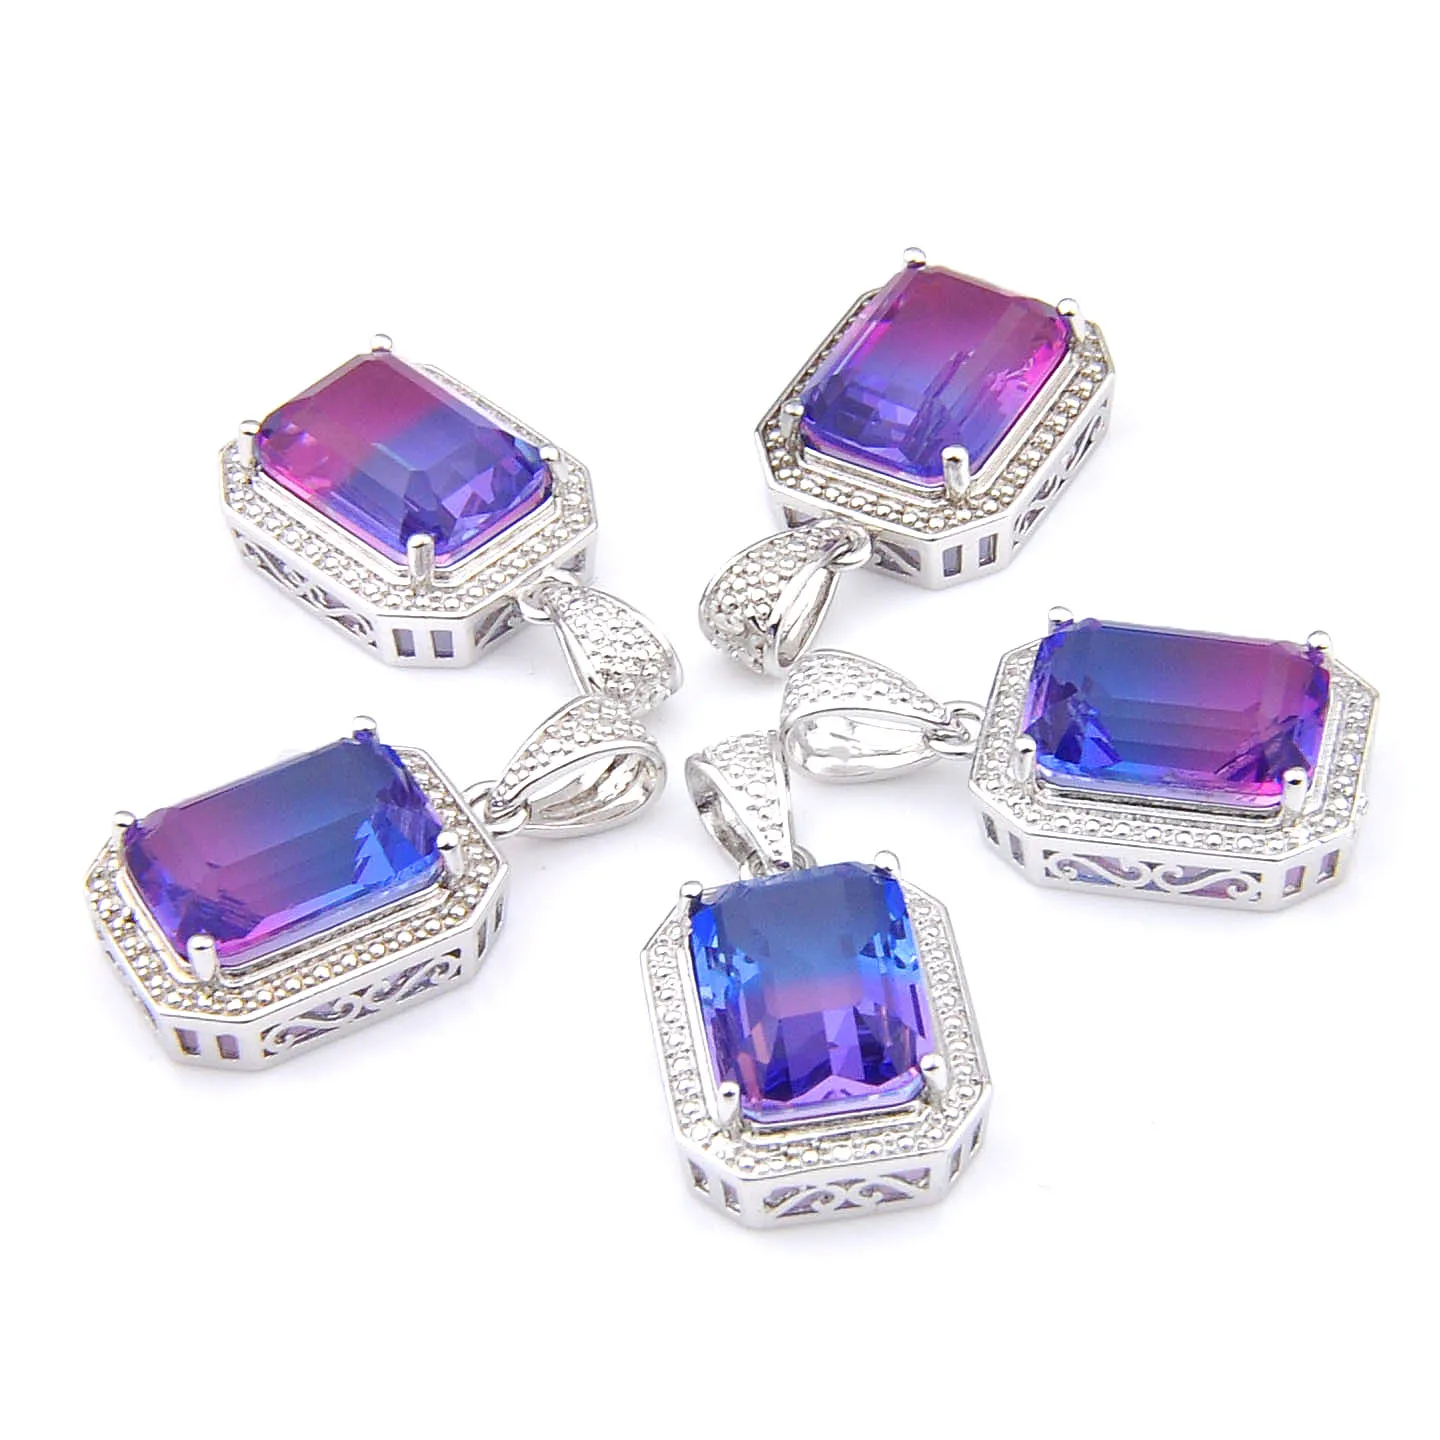 Mélanger 5 pièces pendentifs Luckyshine Shine coupe carrée violet bicolore Tourmaline pierre précieuse 925 argent pendentif colliers